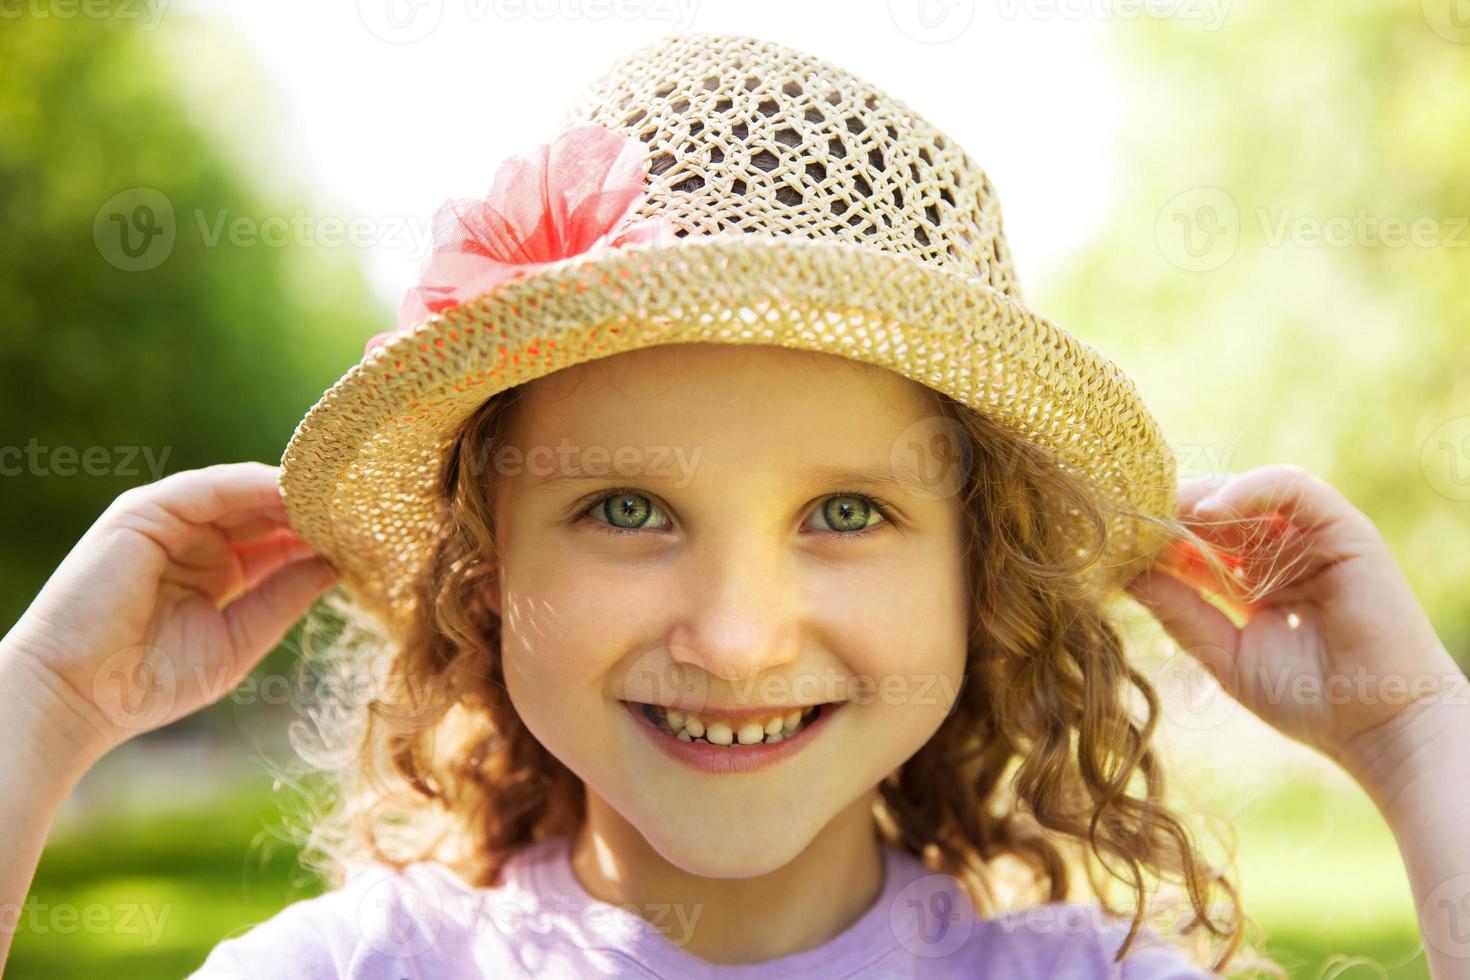 bambina sorridente felice in un cappello foto